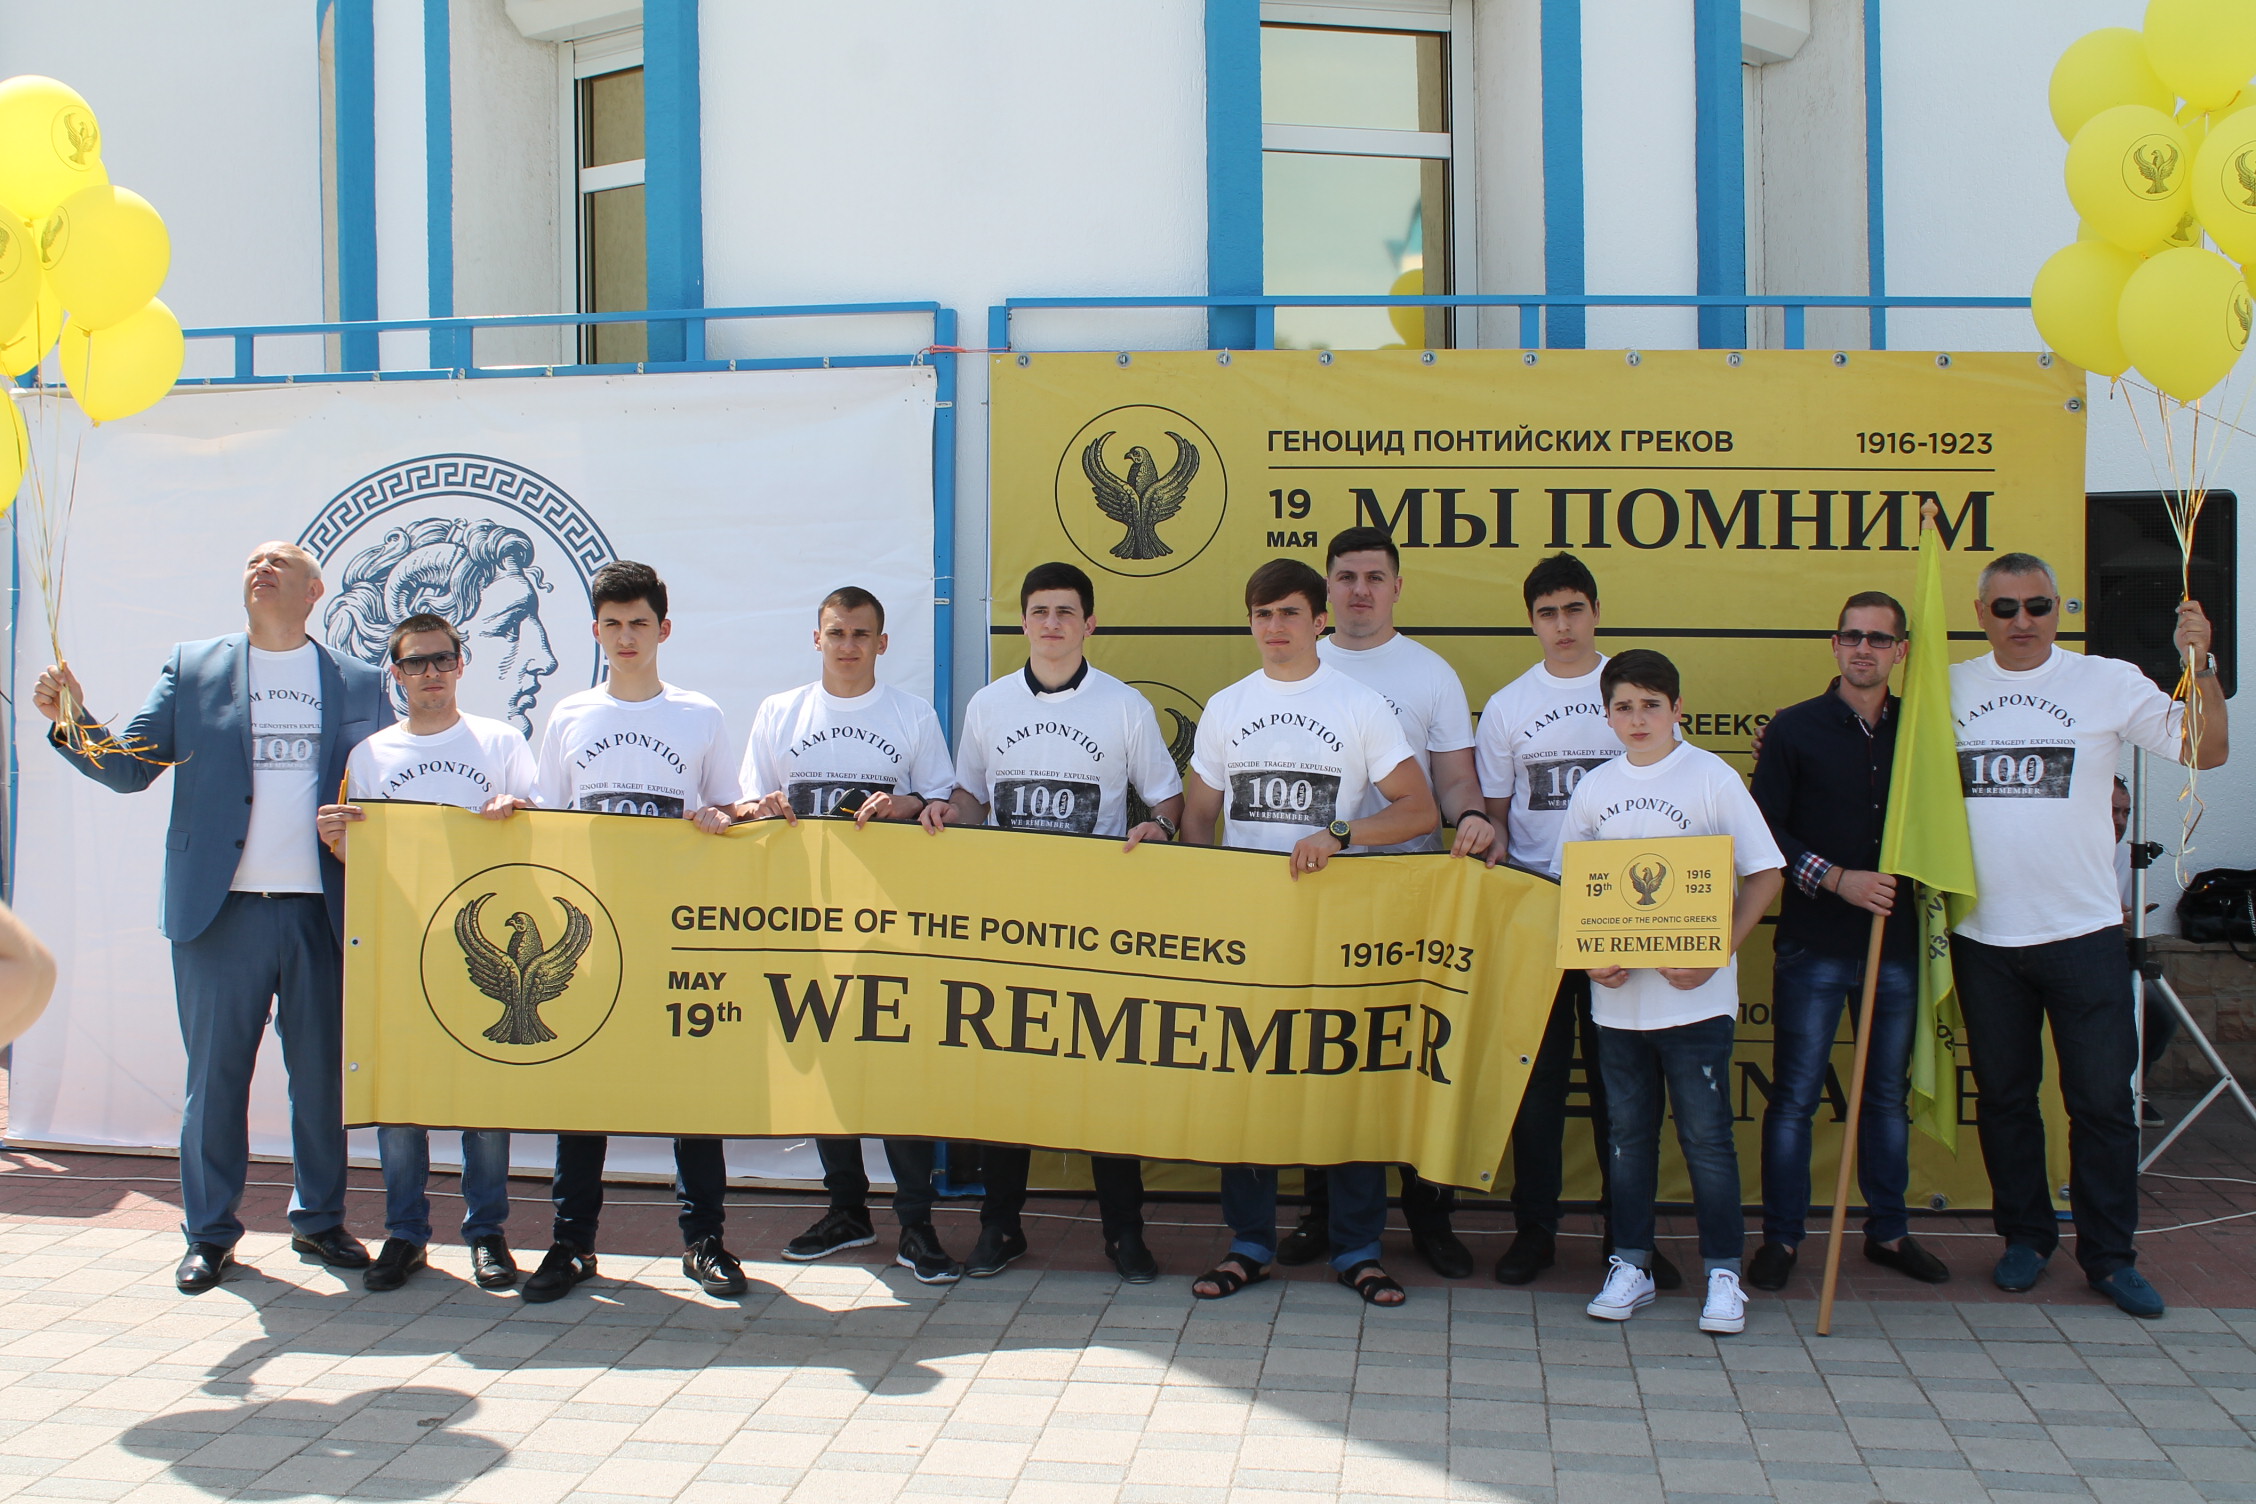 Εκδήλωση μνήμης και τιμής για την Γενοκτονία των Ελλήνων του Πόντου στο Νοβοροσσίσκ 19 Μαΐου 2018 (Νοβοροσσίσκ)